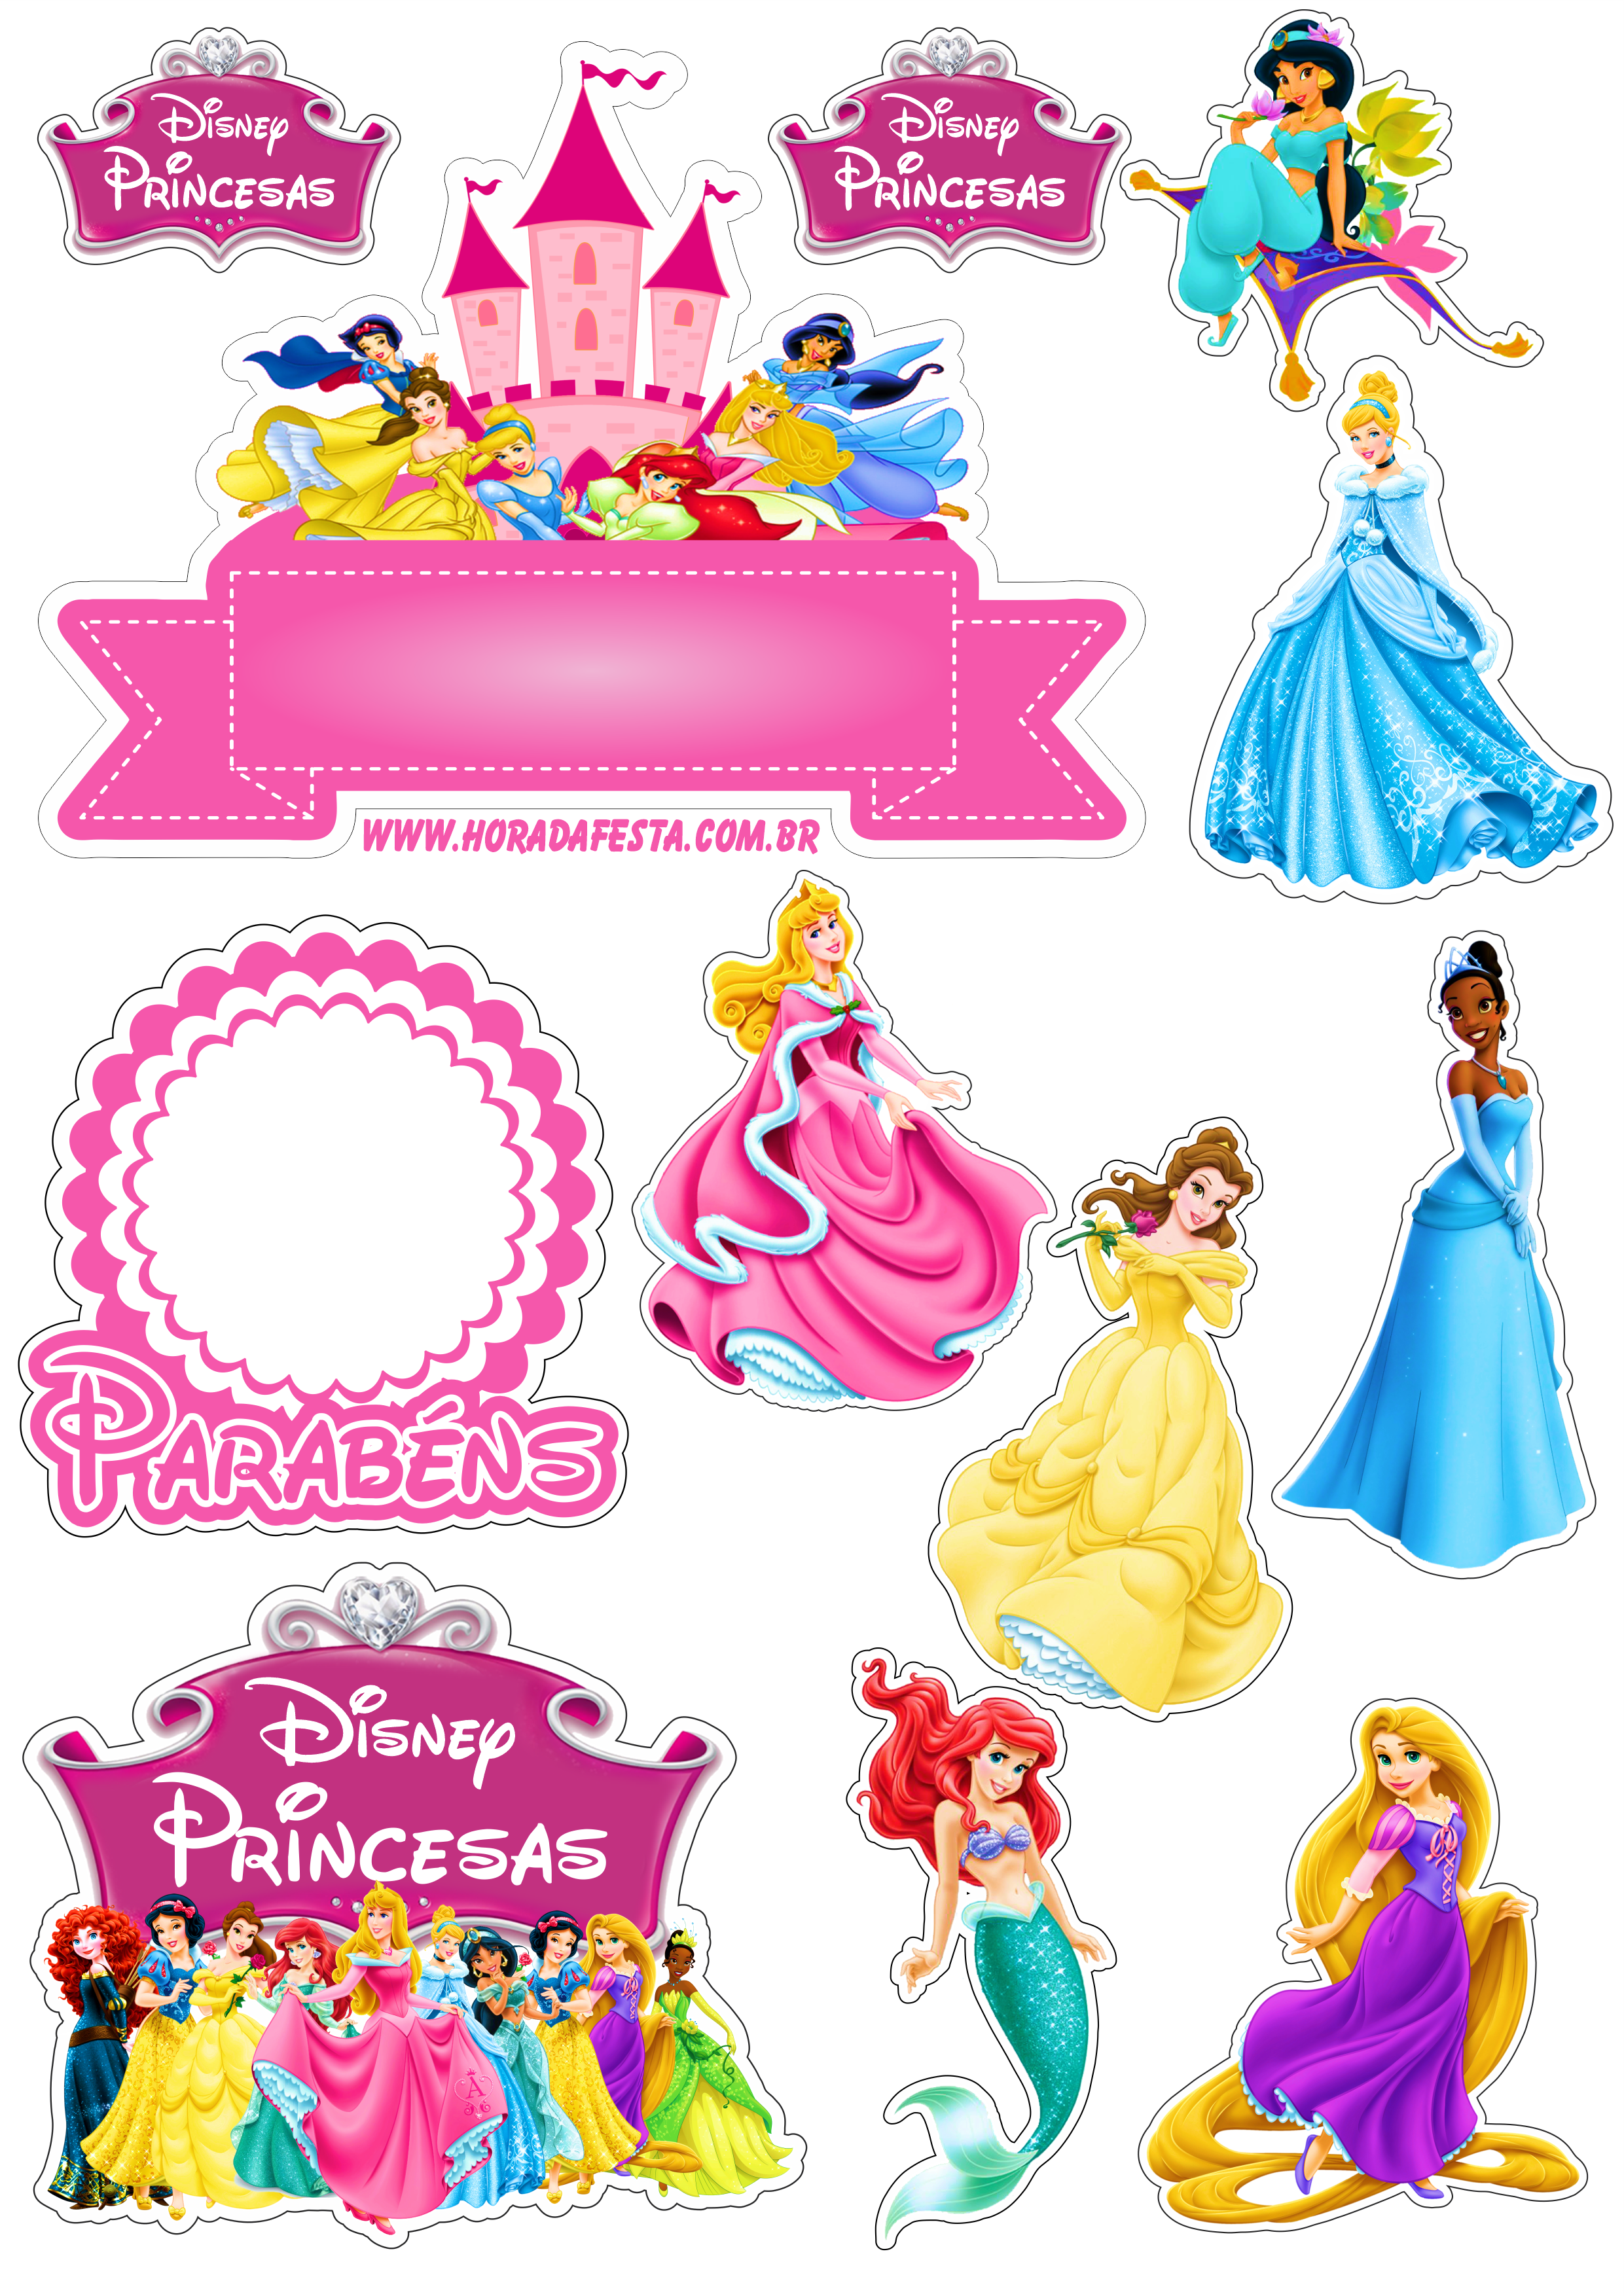 Topo de bolo para imprimir princesas disney animação infantil festa de aniversário rosa parabéns designe grátis png